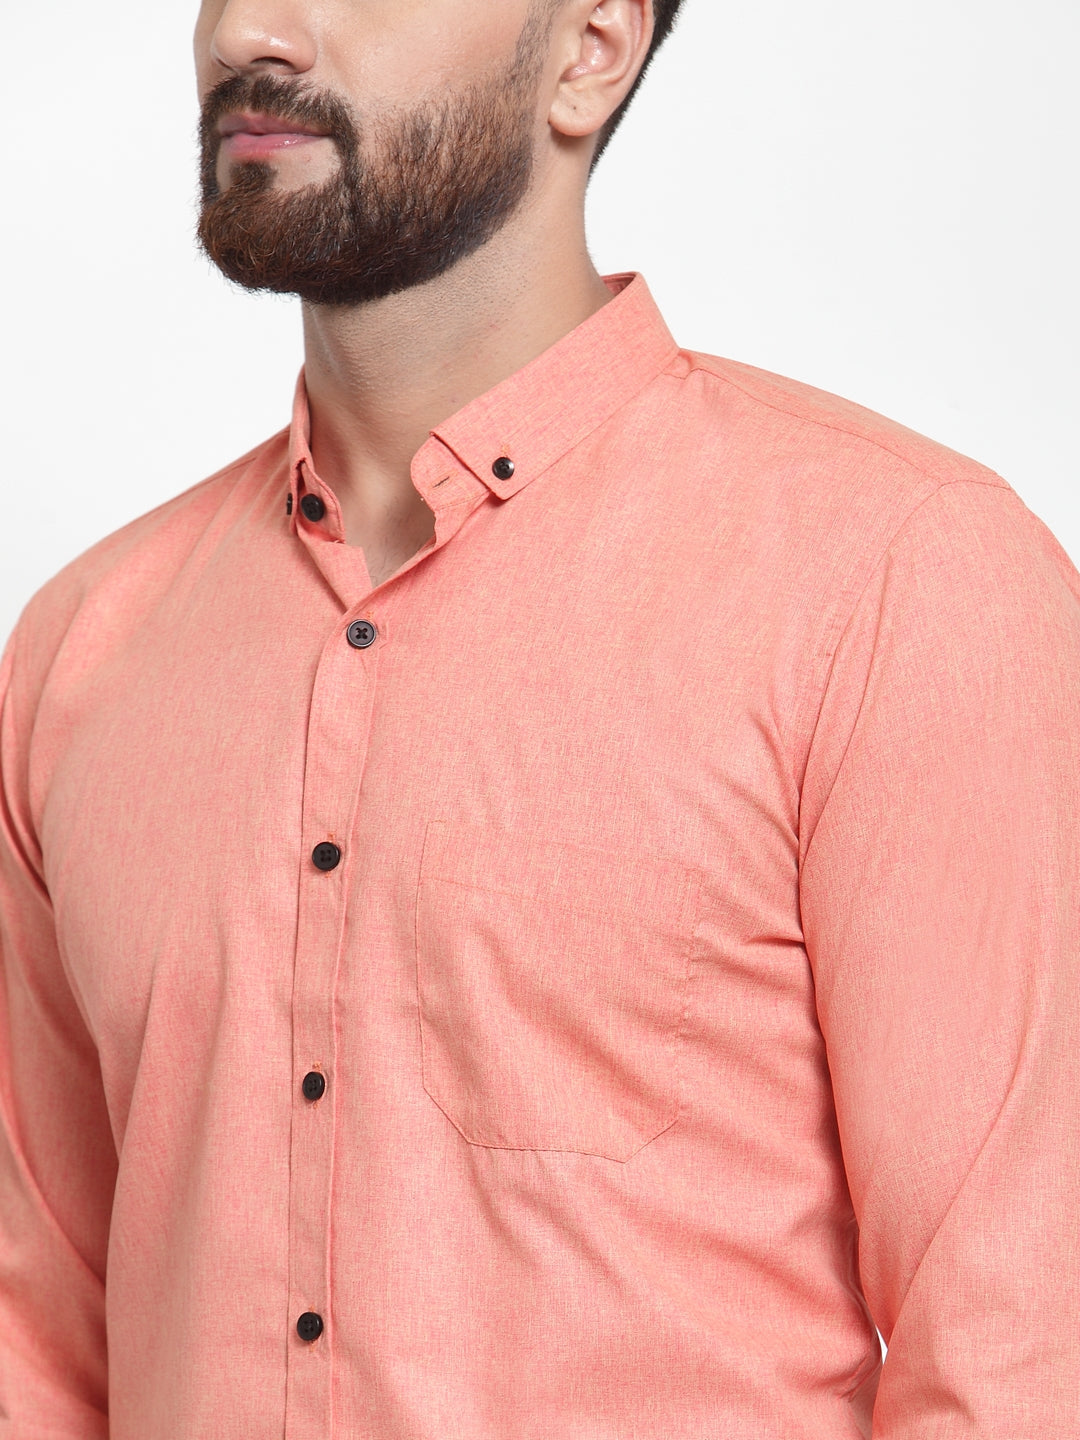 Men's Peach Cotton Solid Button Down Formal Shirts ( SF 734Peach ) - Jainish